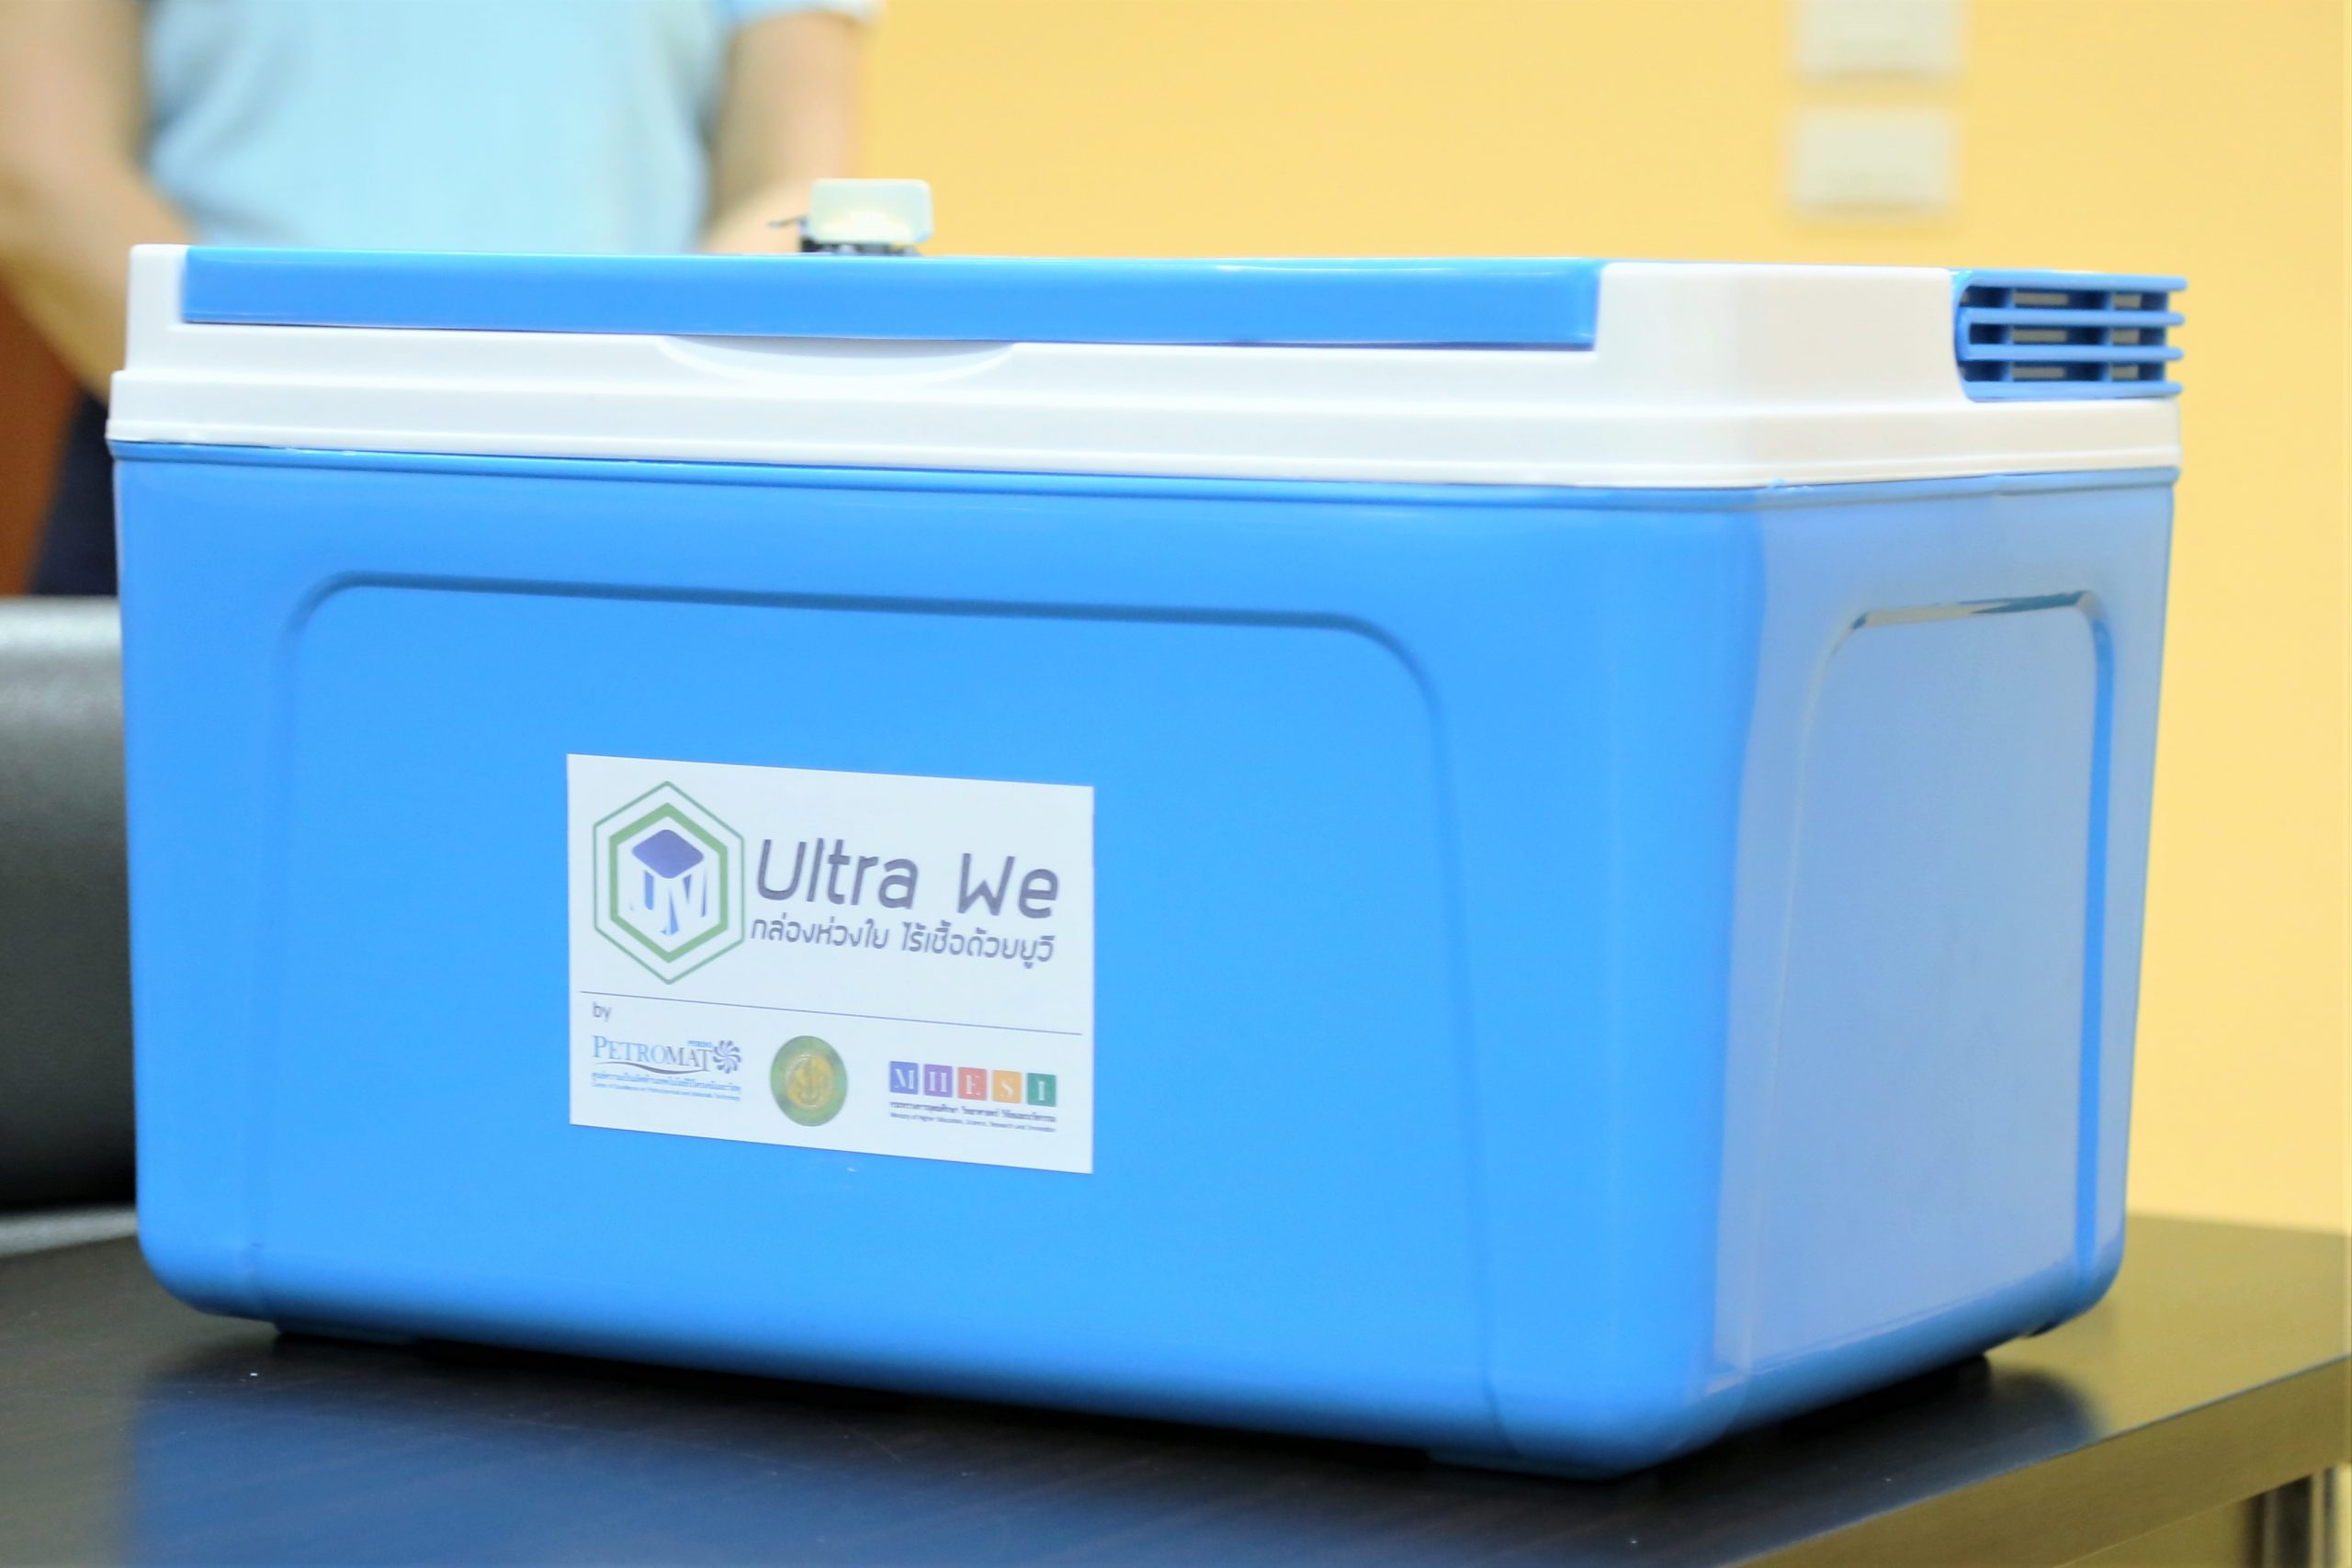 เครื่อง Ultra We: กล่องห่วงใย ไร้เชื้อด้วยยูวี มอบให้โรงพยาบาลต้านโรคโควิด-19